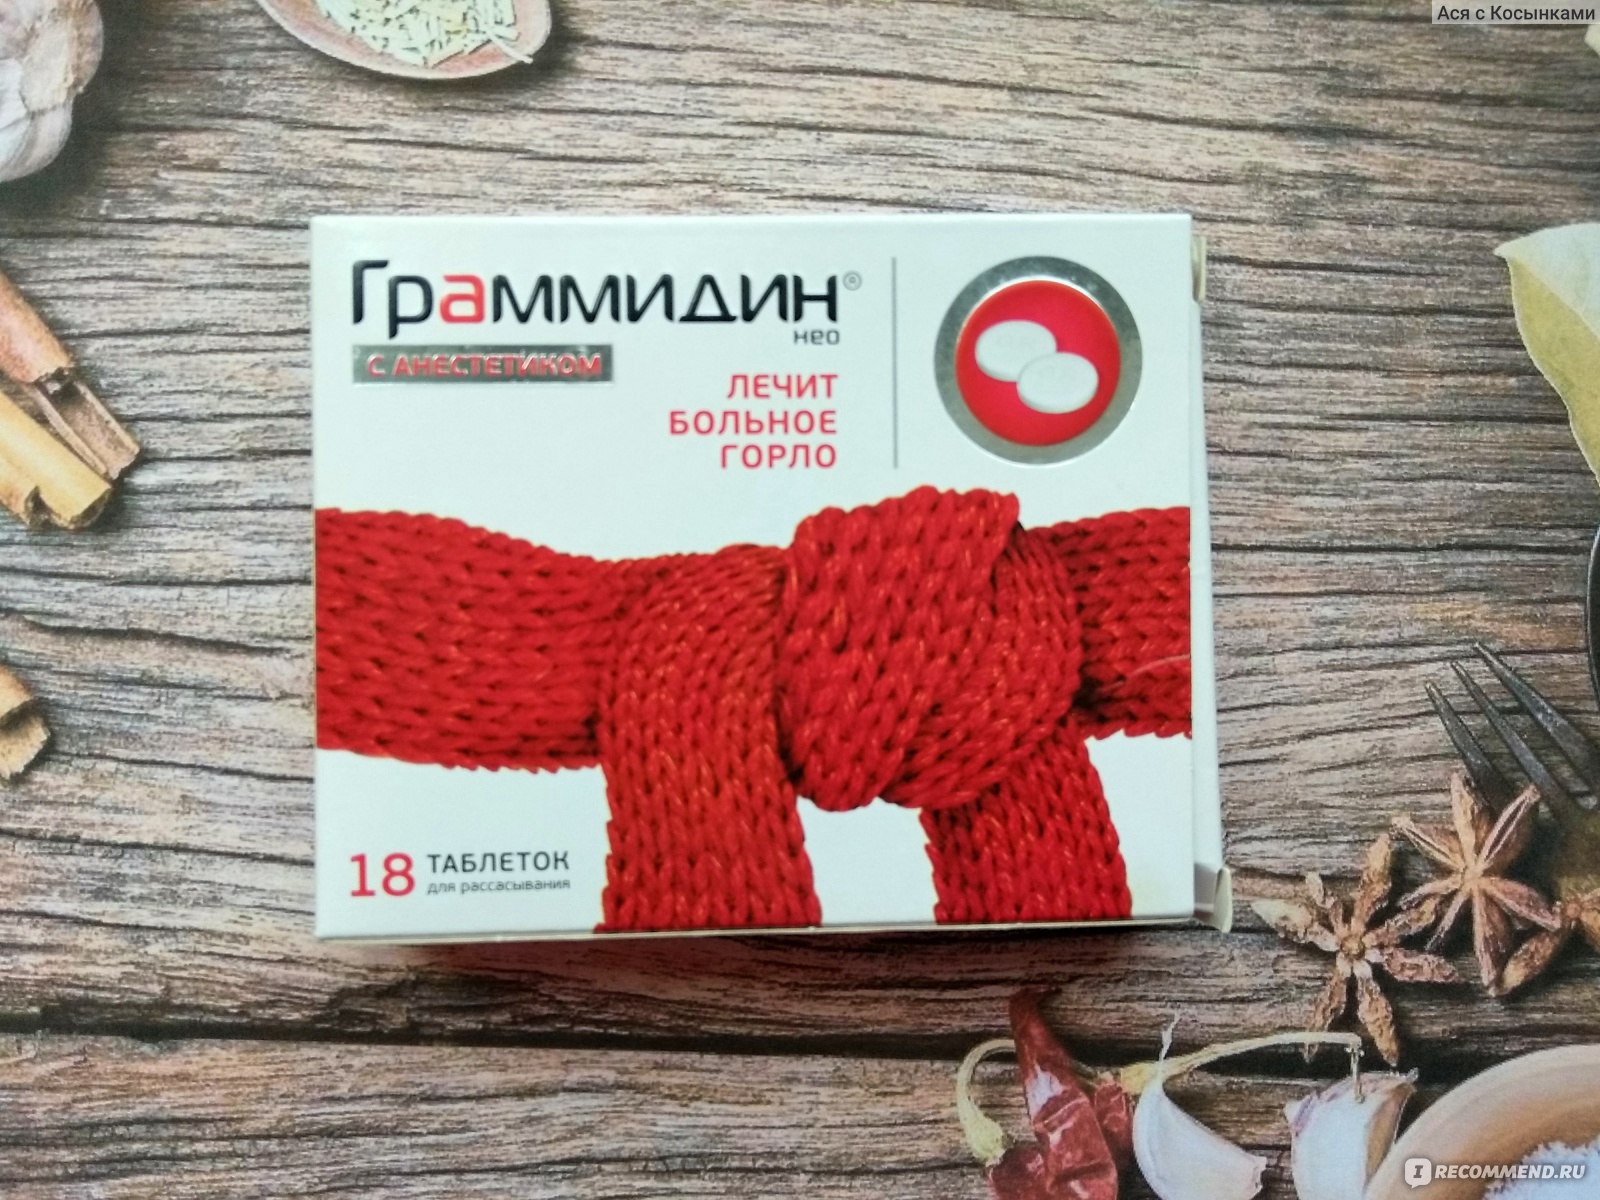 Граммидин Нео с красным шарфиком